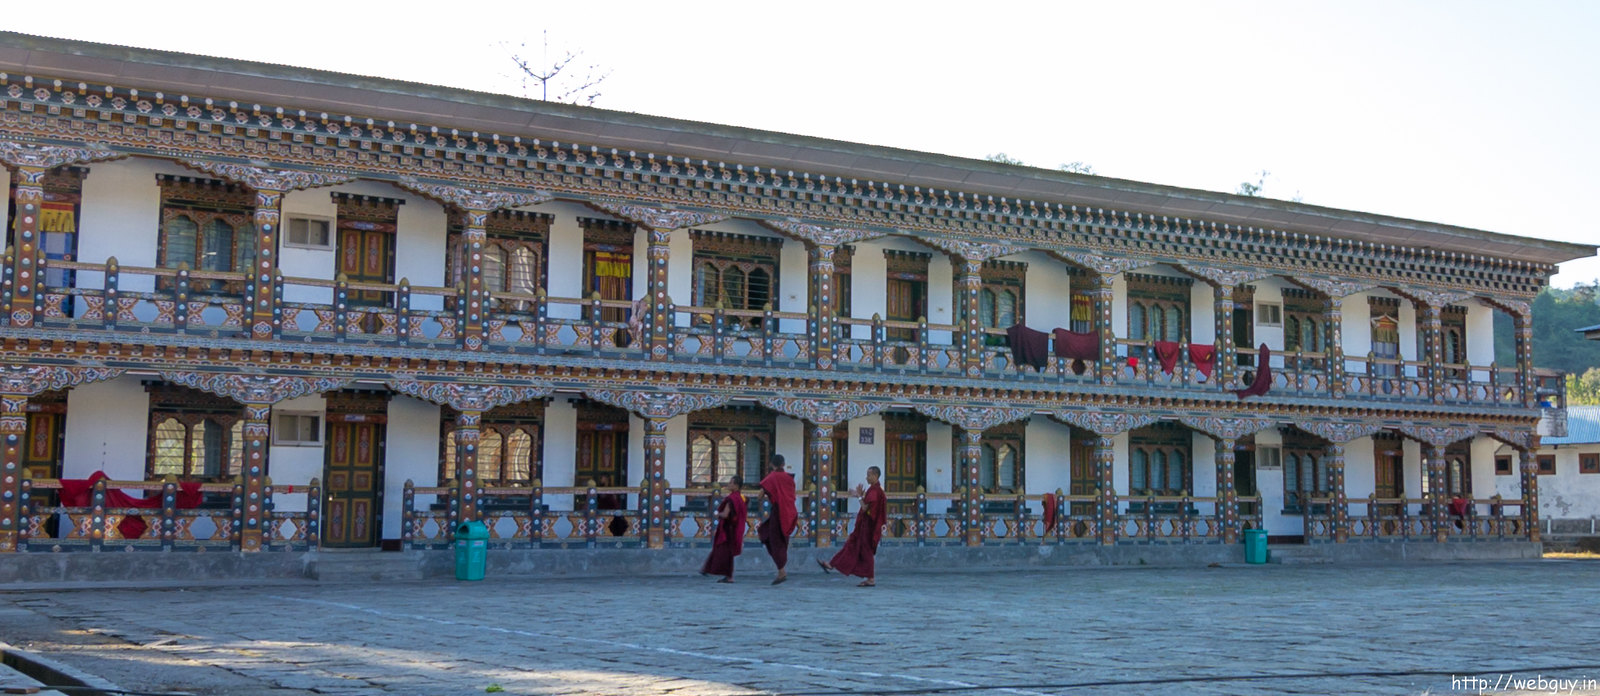 The Dancing Monks - Samdrup Jonkhar Monastery 